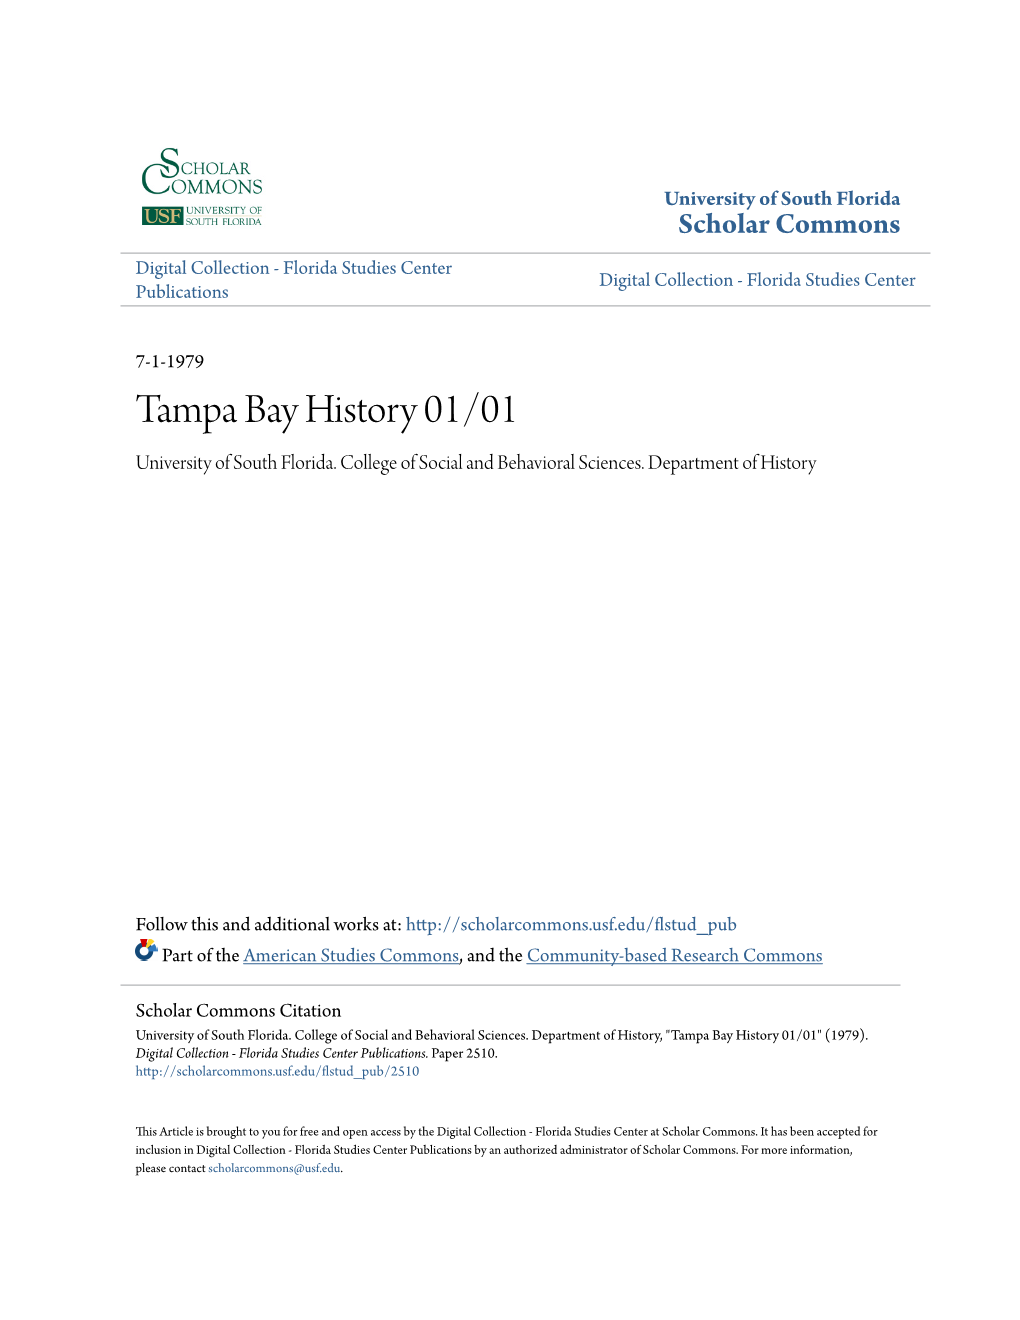 Tampa Bay History 01/01 University of South Florida